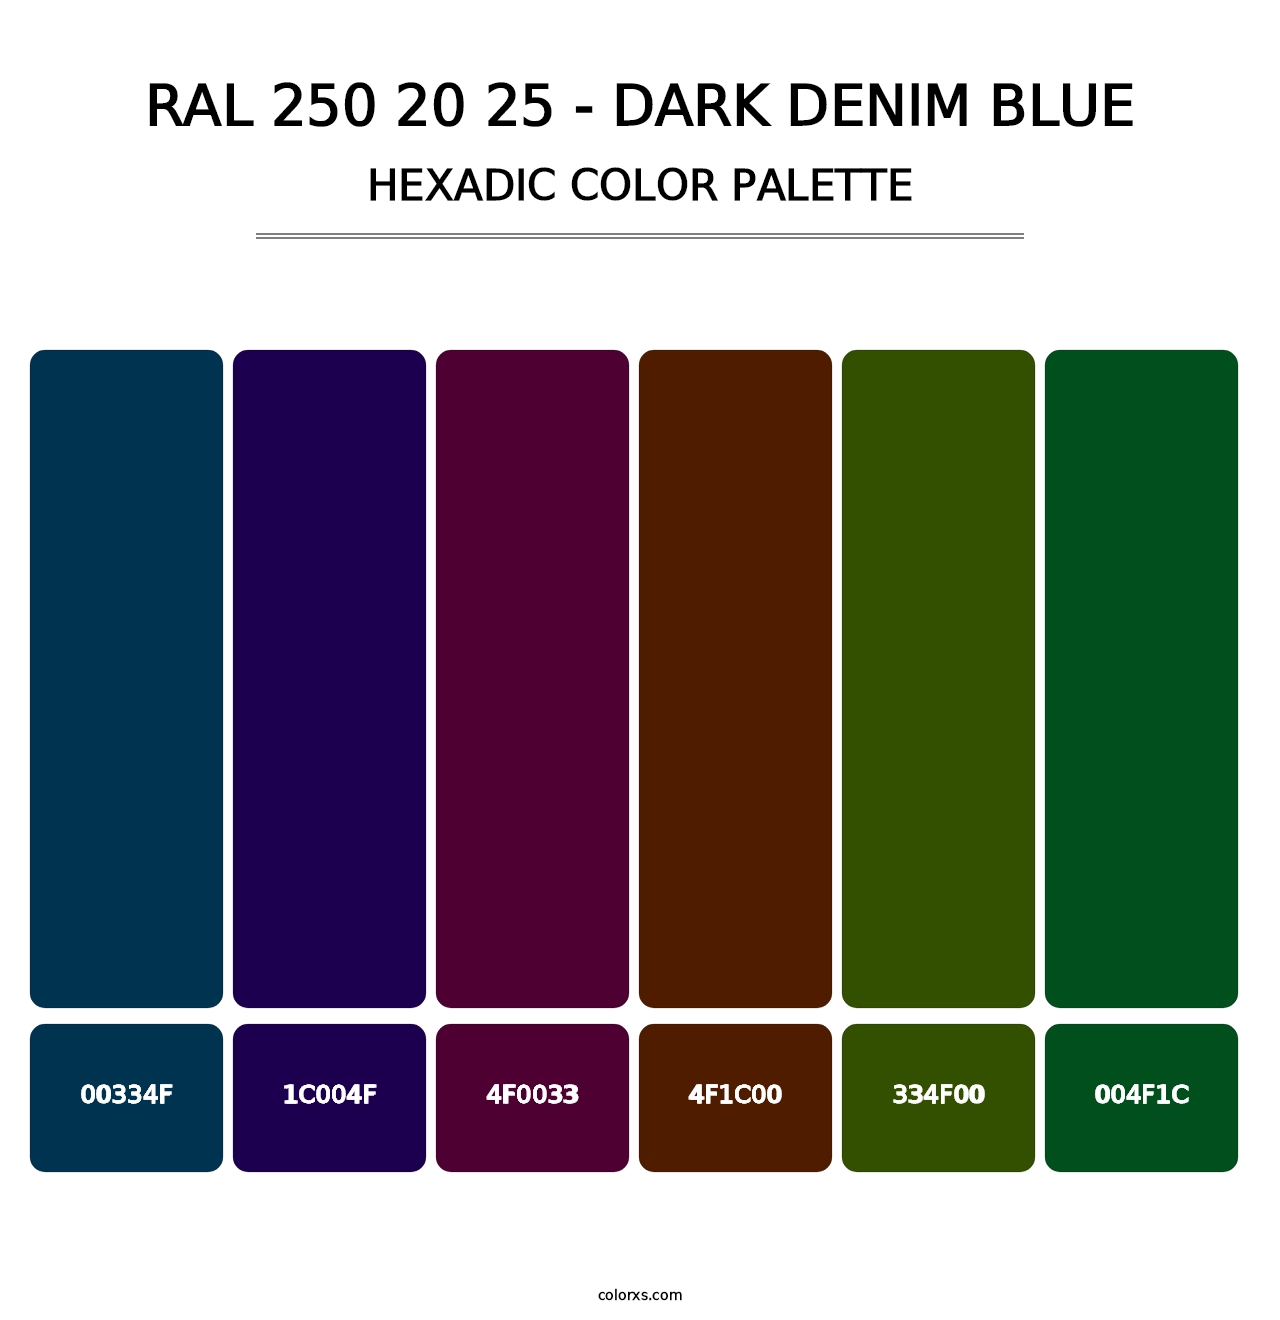 RAL 250 20 25 - Dark Denim Blue - Hexadic Color Palette